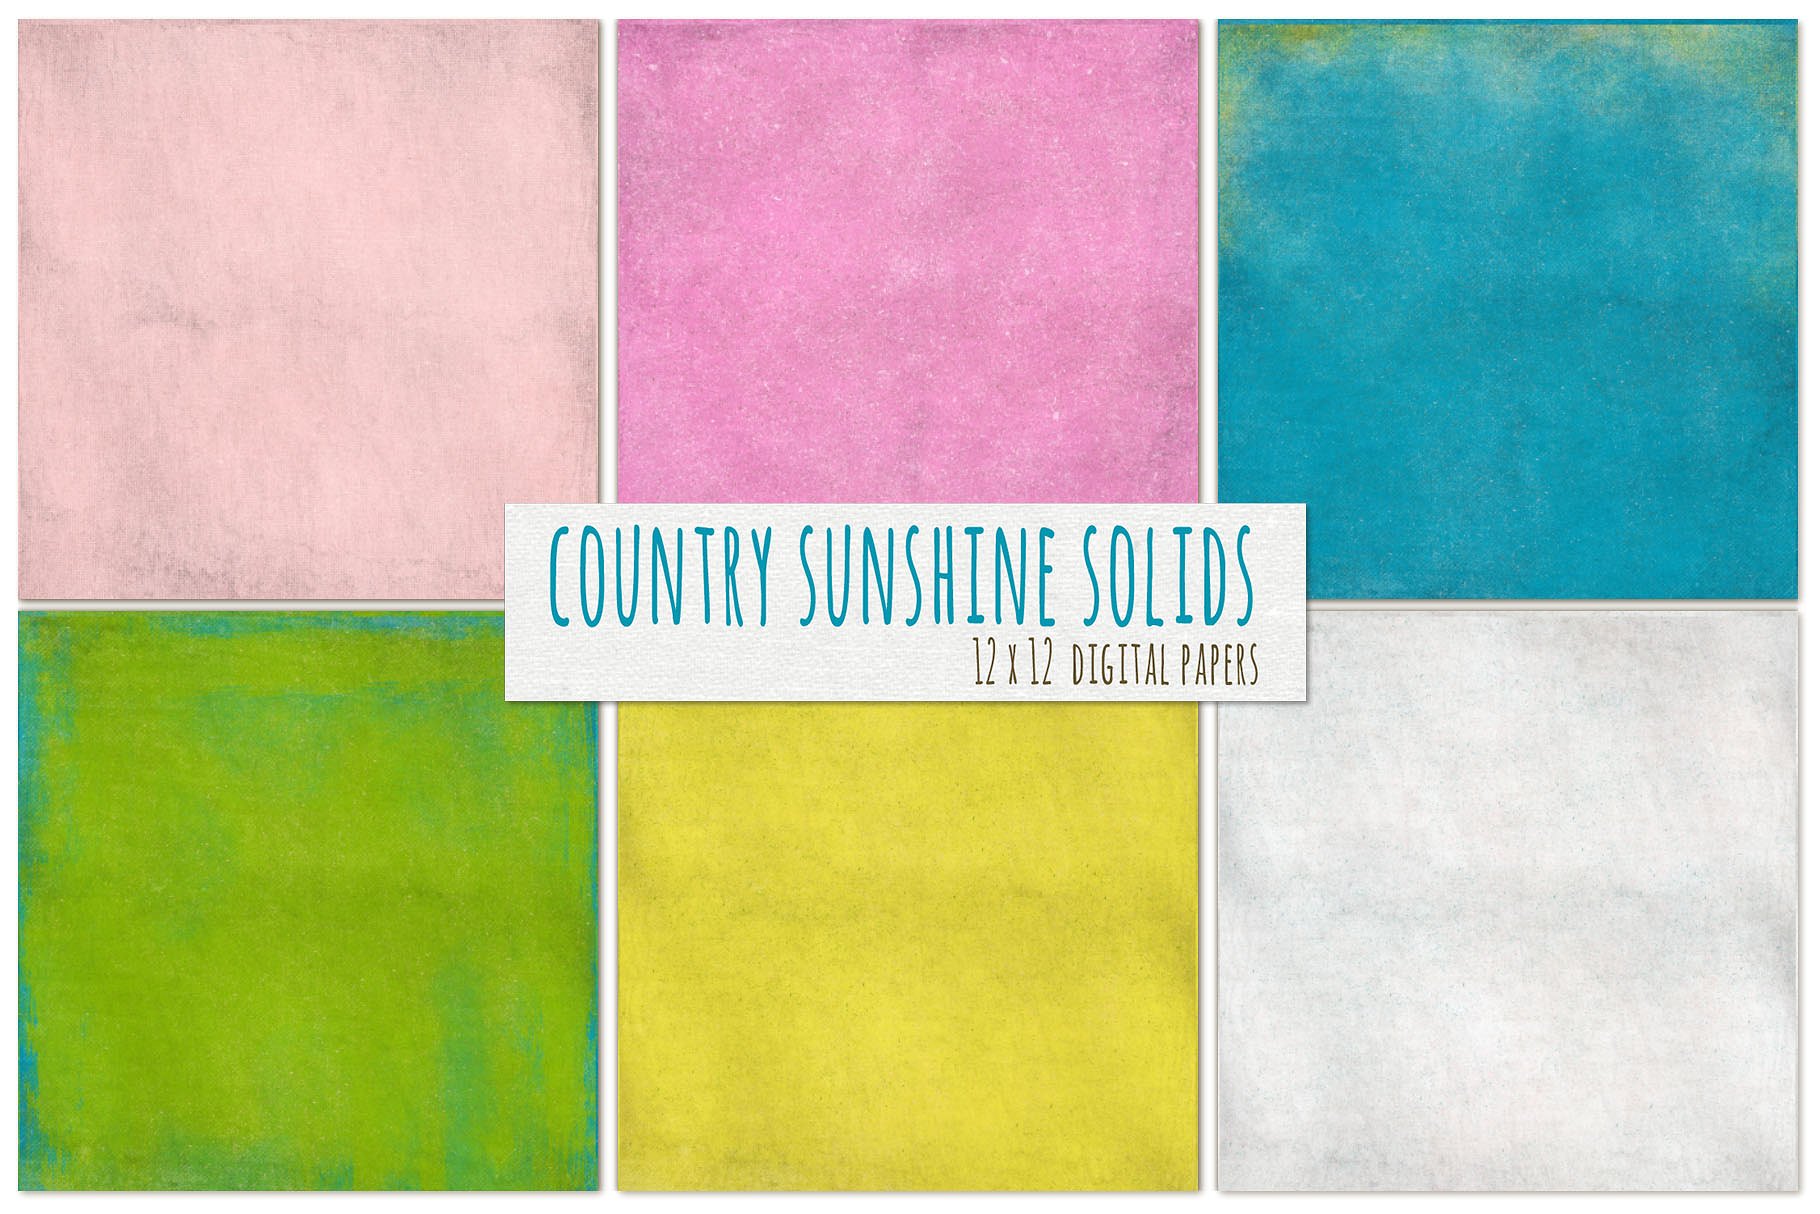 多彩阳光色彩纸张纹理 Country Sunshine Solid Digital Paper插图(2)